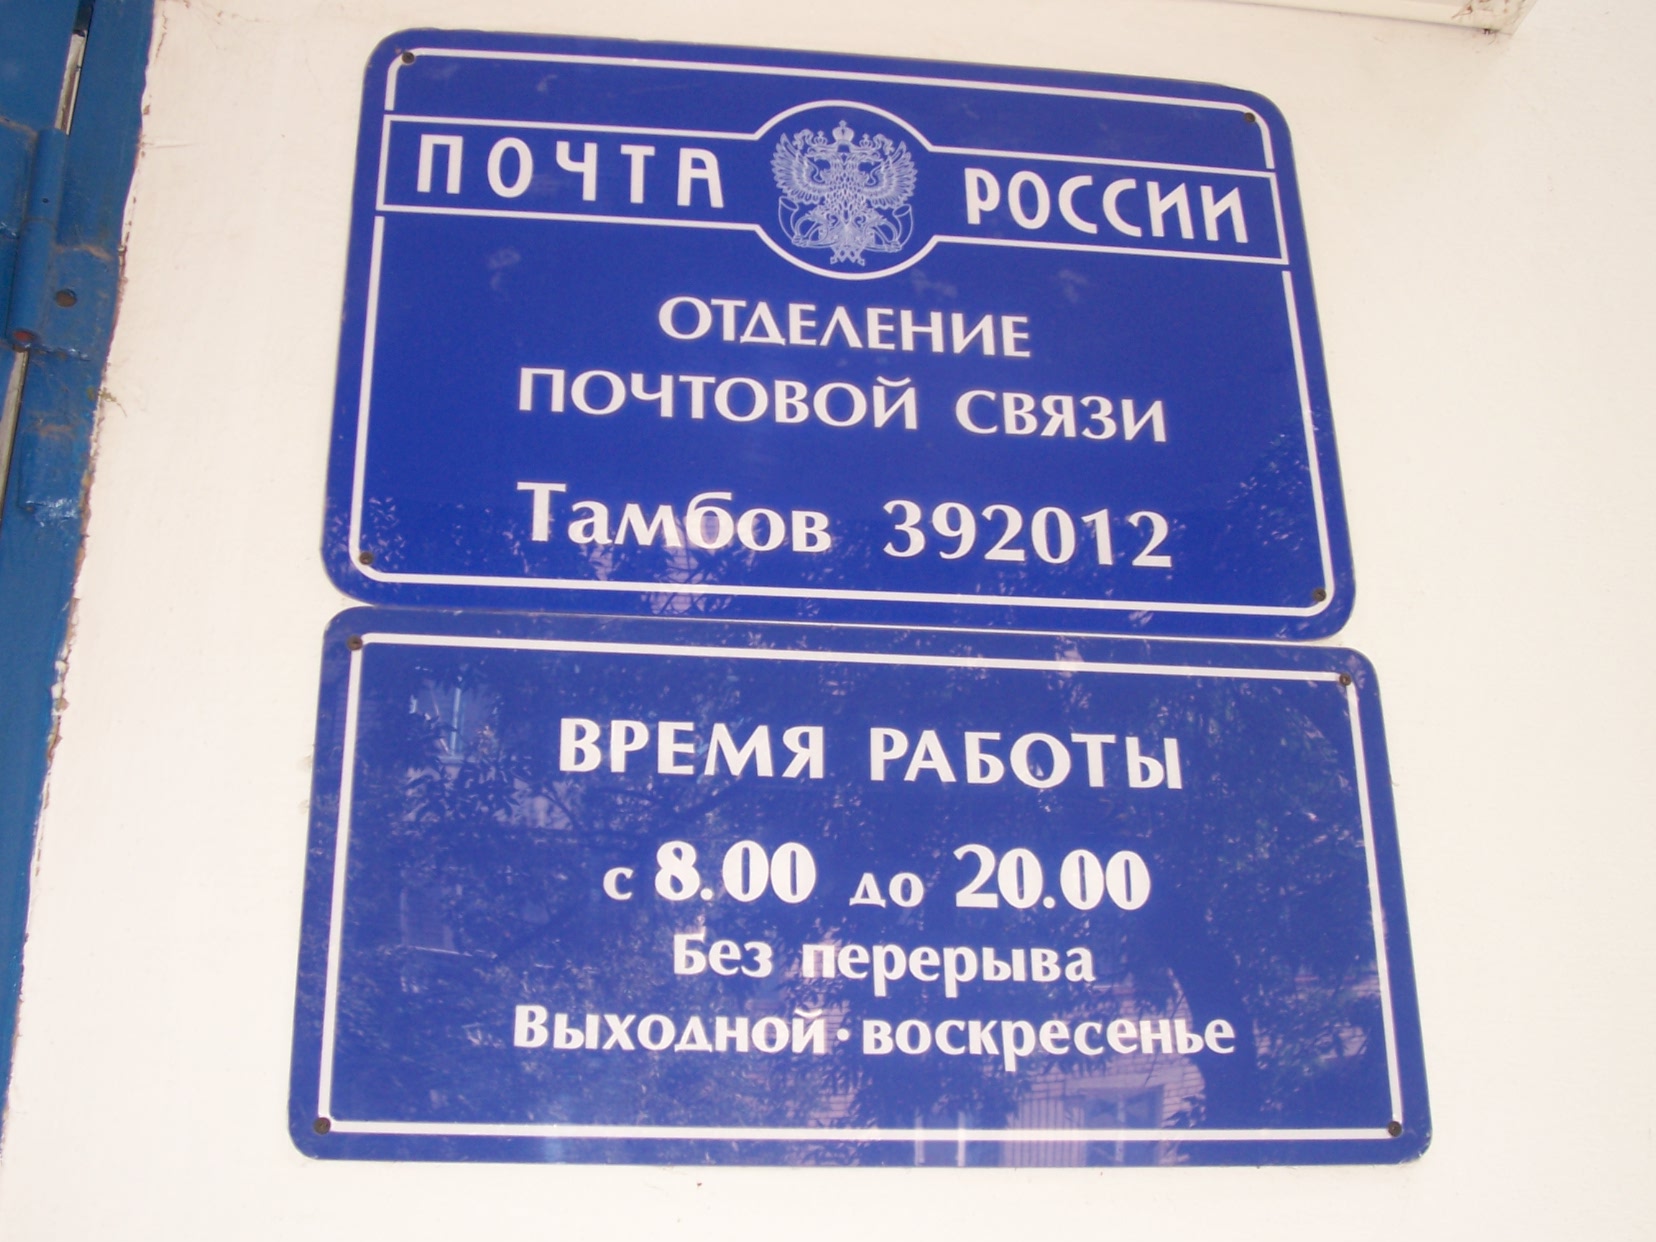 ВХОД, отделение почтовой связи 392012, Тамбовская обл., Тамбов